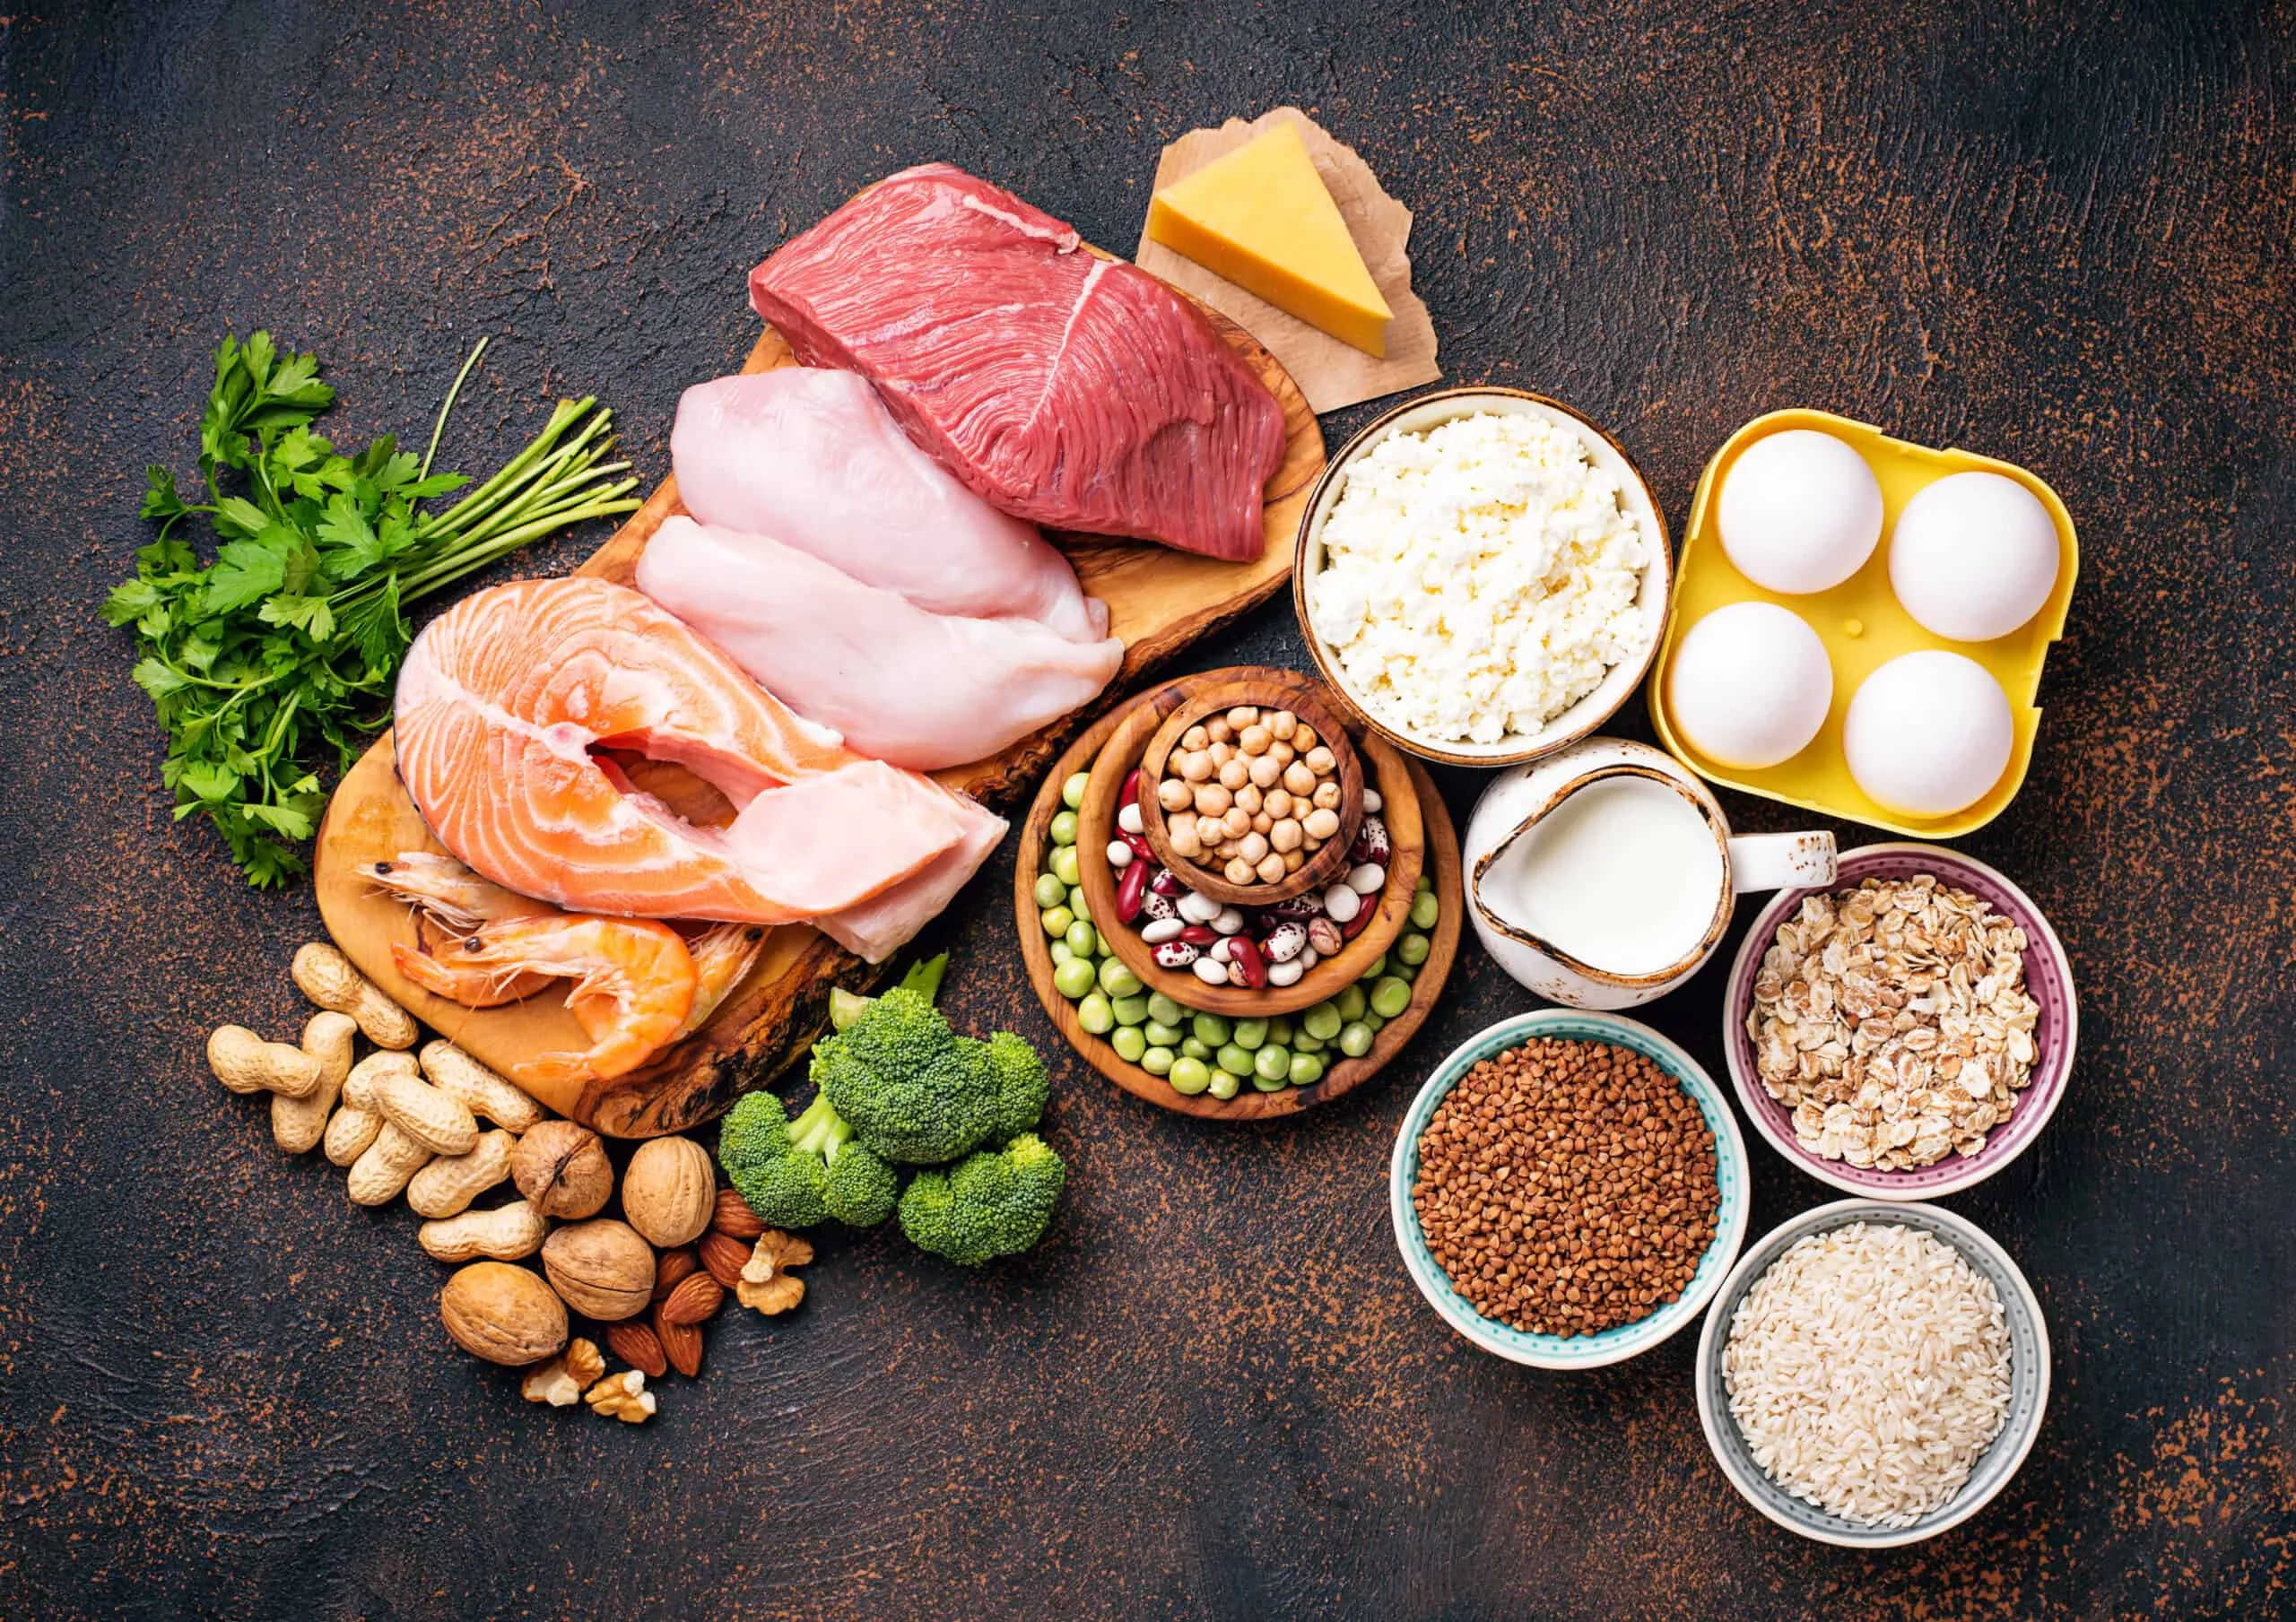 در هر سنی روزانه به چه مقدار پروتئین نیاز داریم؟